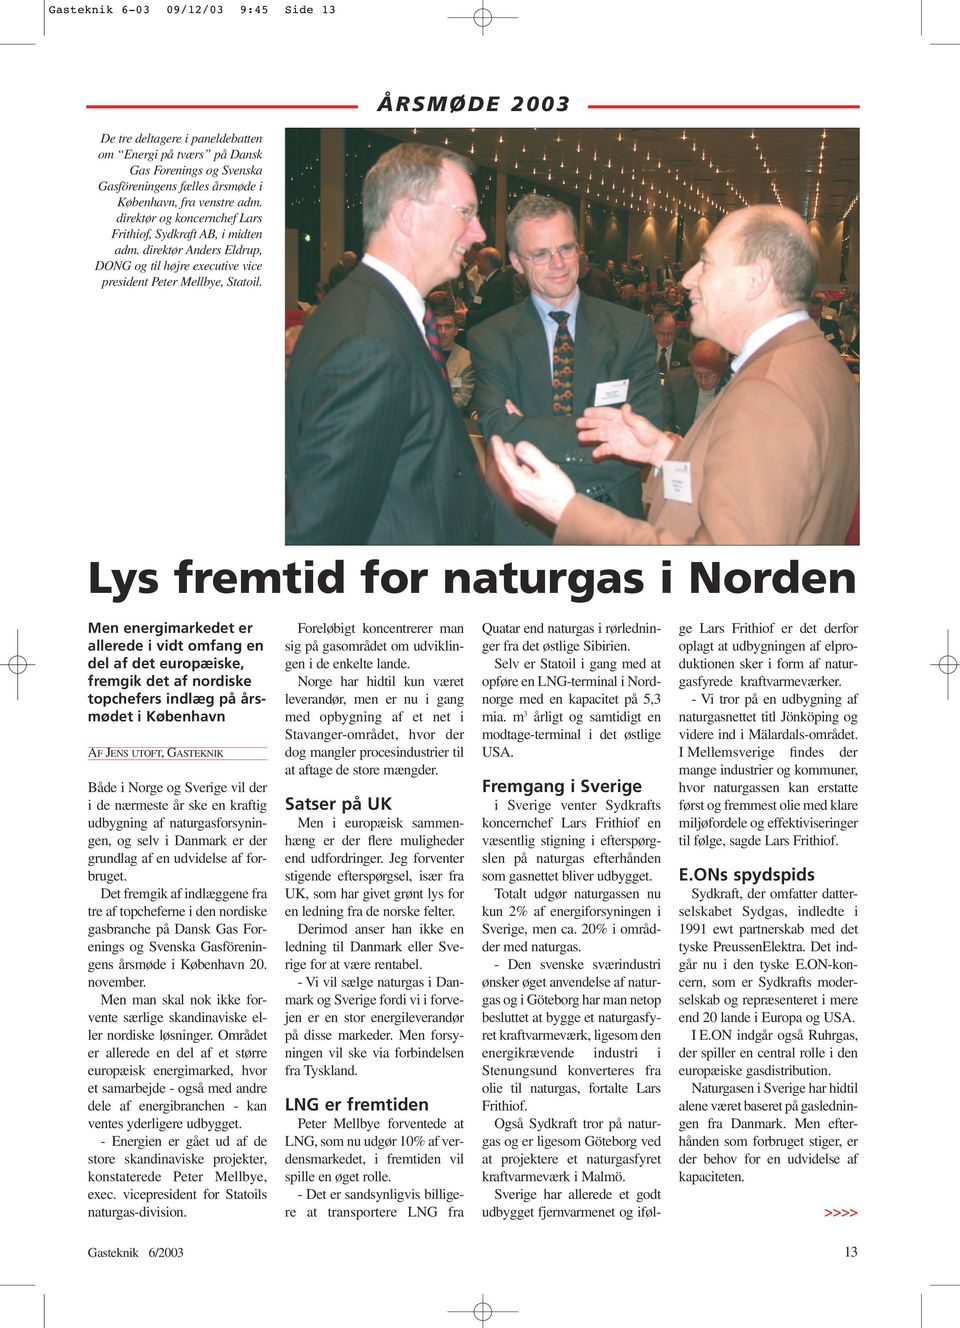 Lys fremtid for naturgas i Norden Men energimarkedet er allerede i vidt omfang en del af det europæiske, fremgik det af nordiske topchefers indlæg på årsmødet i København AF JENS UTOFT,GASTEKNIK Både